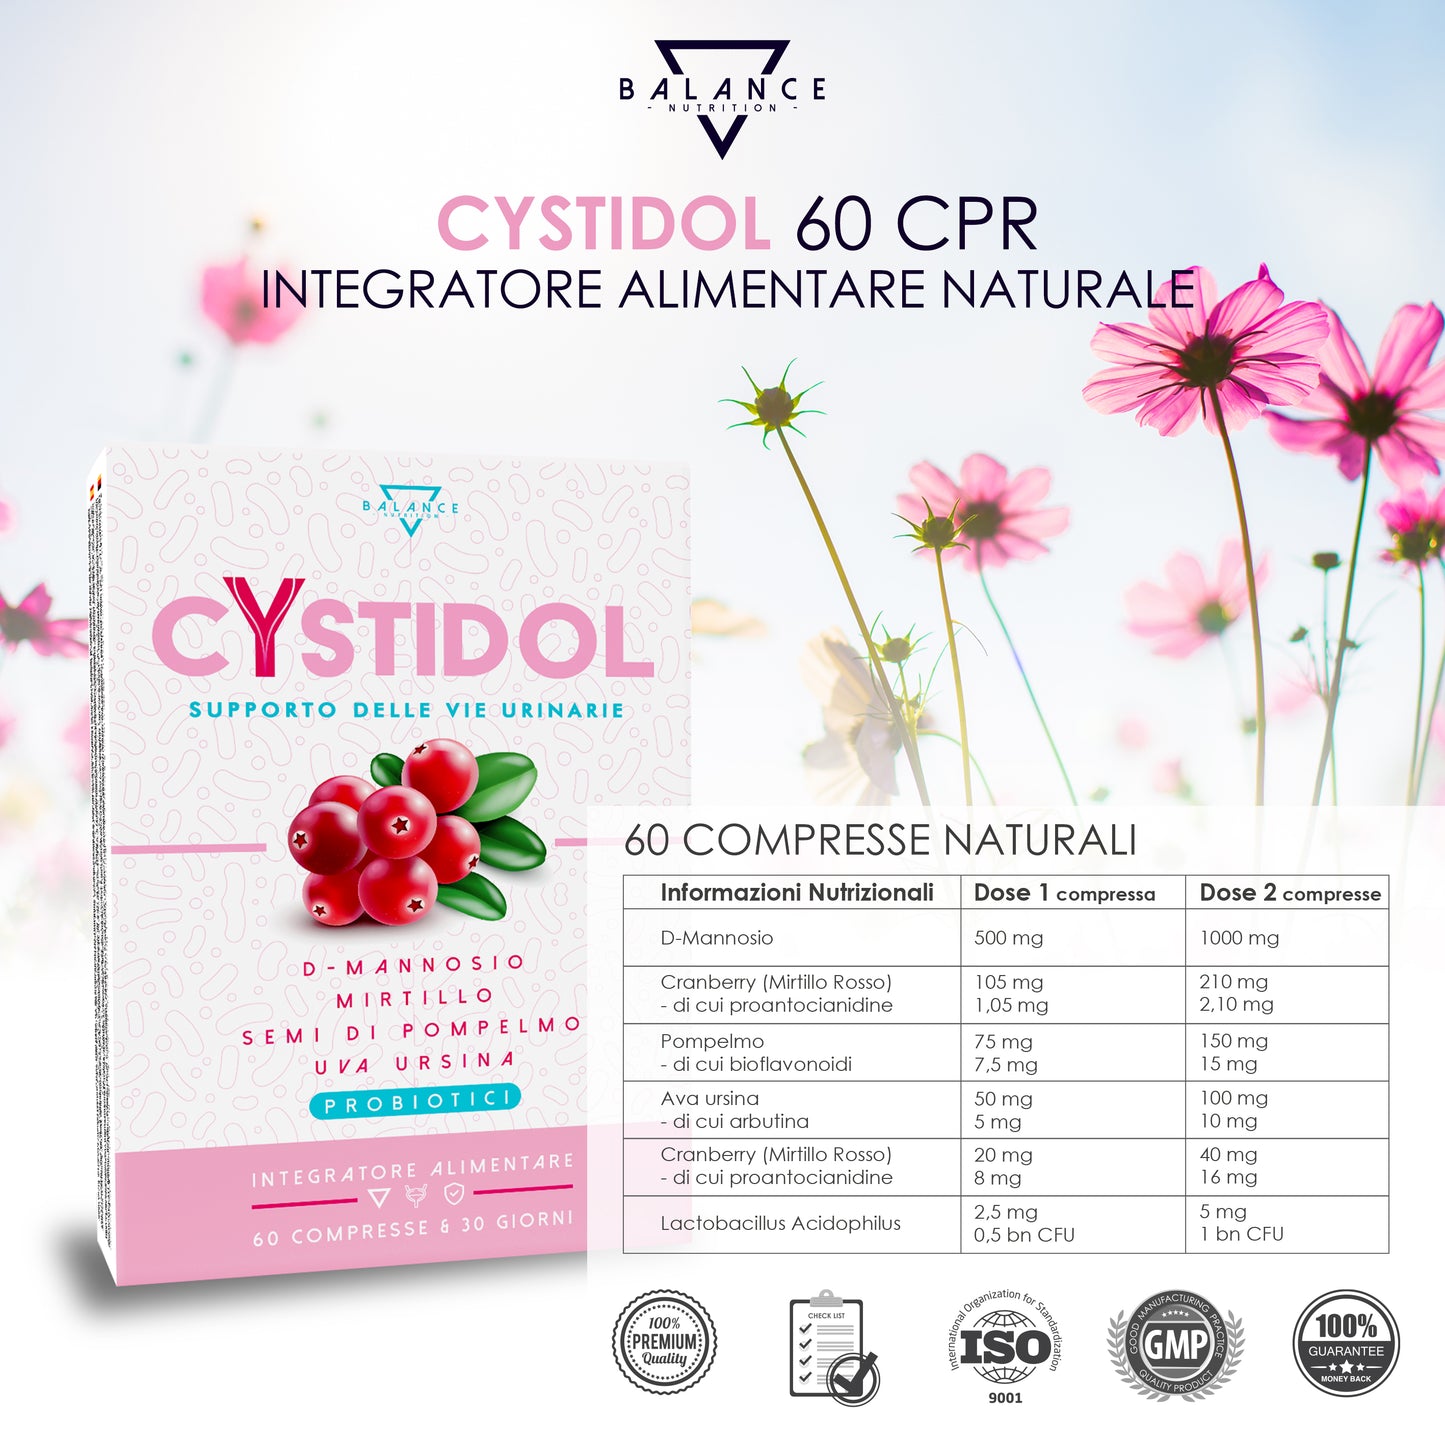 
                  
                    🔵 1 Cystidol + 3 Probion Lady
                  
                